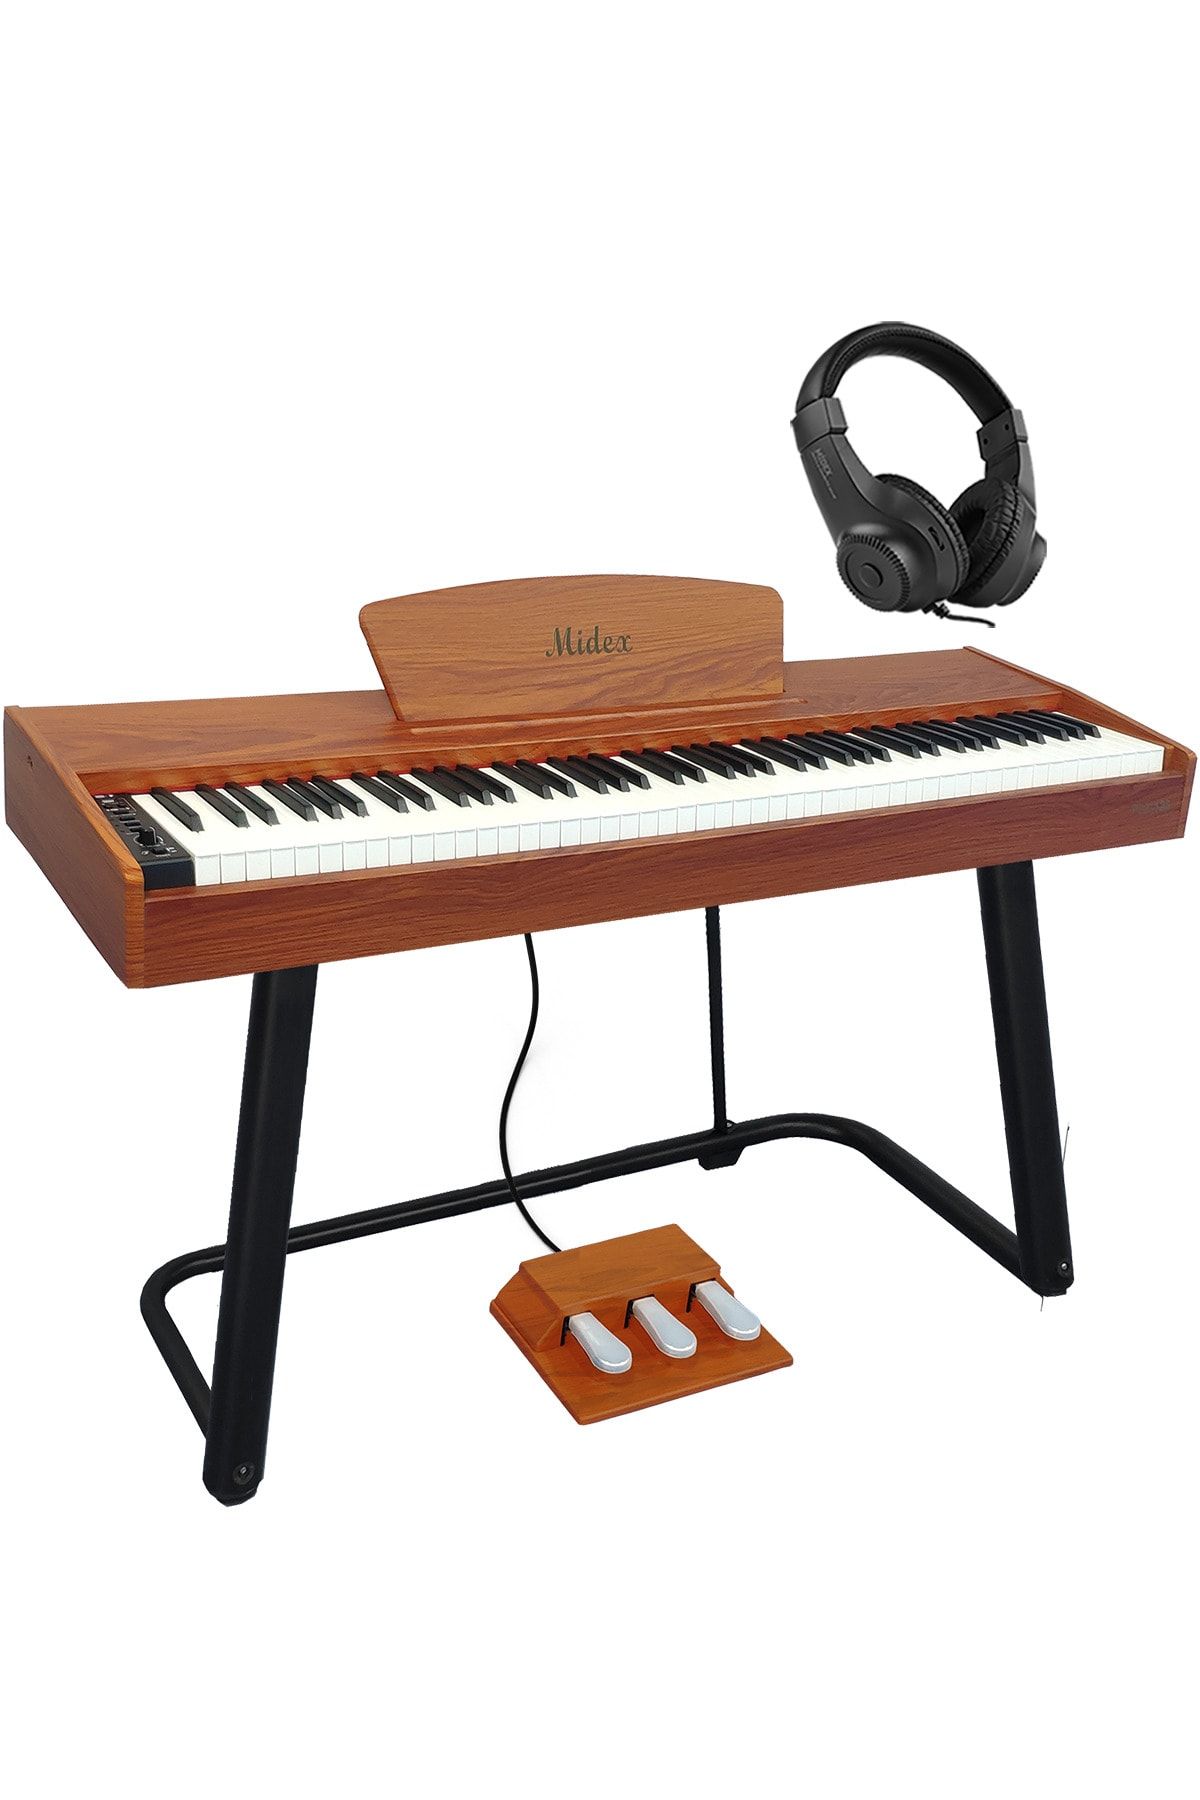 Midex Plx-125or taşınabilir Dijital Piyano Tuş Hassasiyetli 88 Tuş Bluetooth (stand Ve kulaklık Ile)